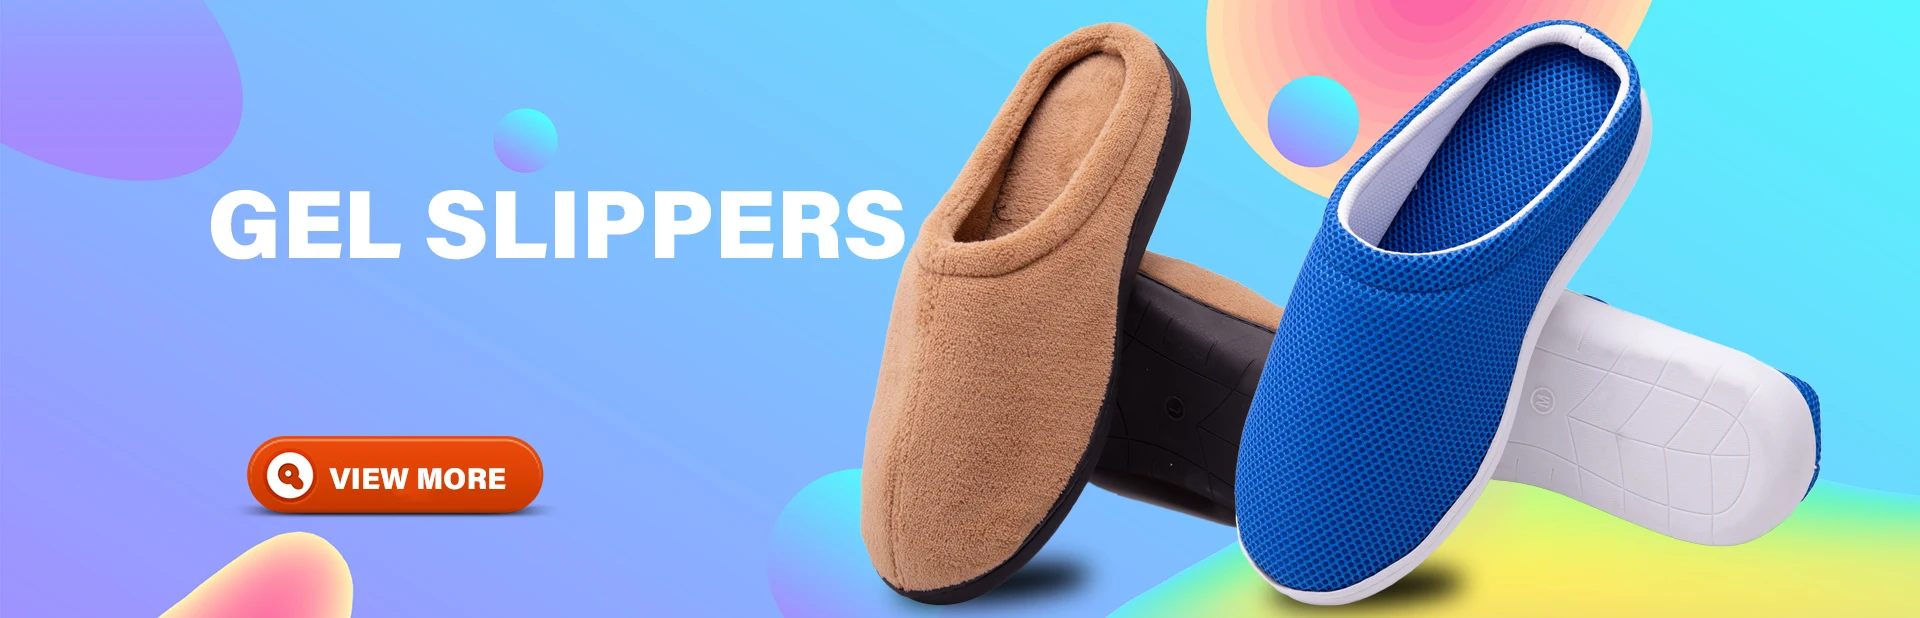 Cixi Aslipper Shoes Co., Ltd.